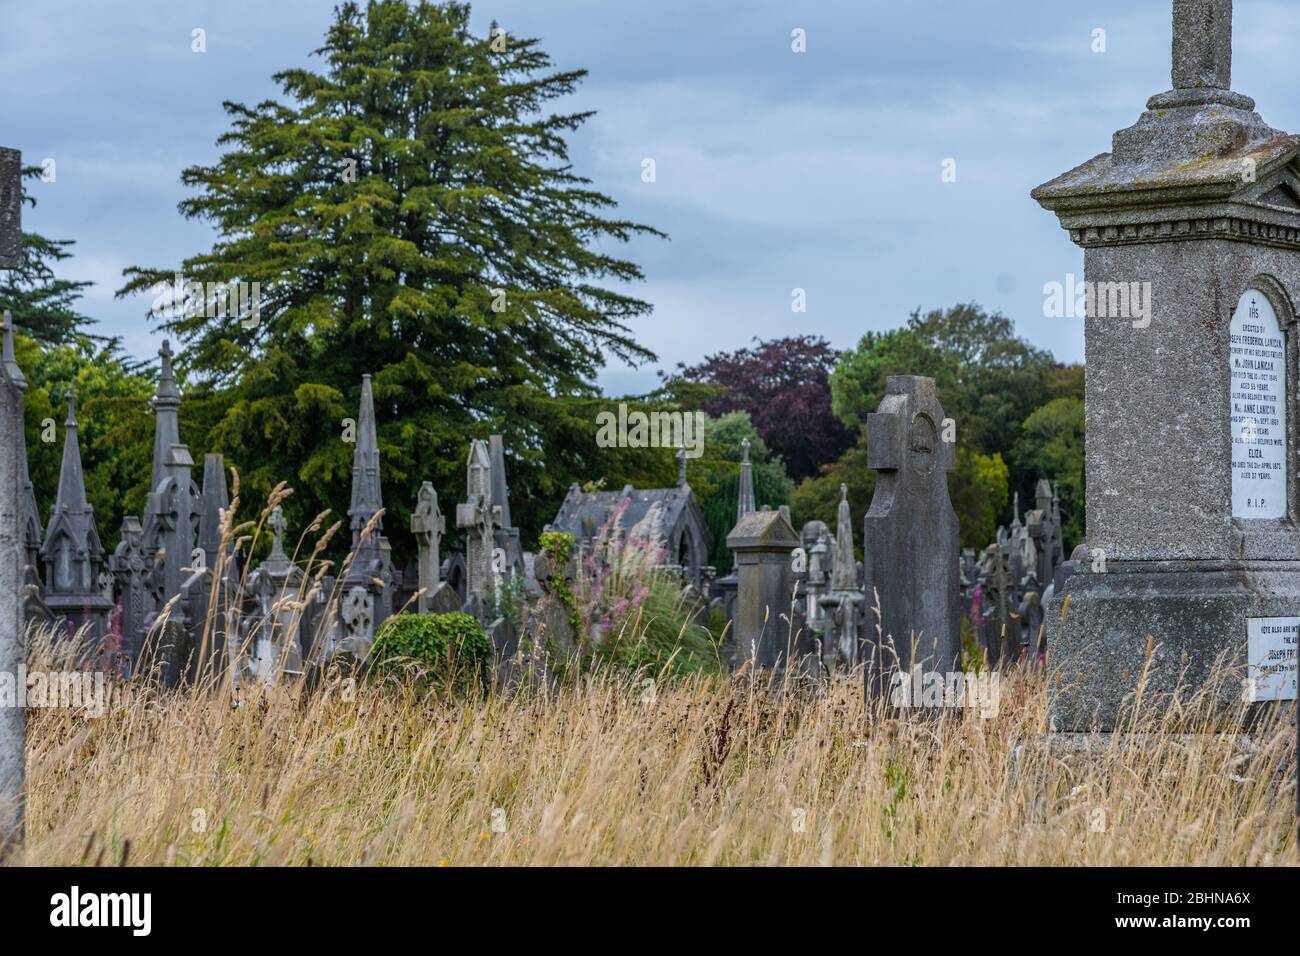 El cementerio Glasnevin fue fundado en 1831 y es el cementerio más grande de Irlanda. Más de un millón de personas fueron enterradas aquí. Foto de stock